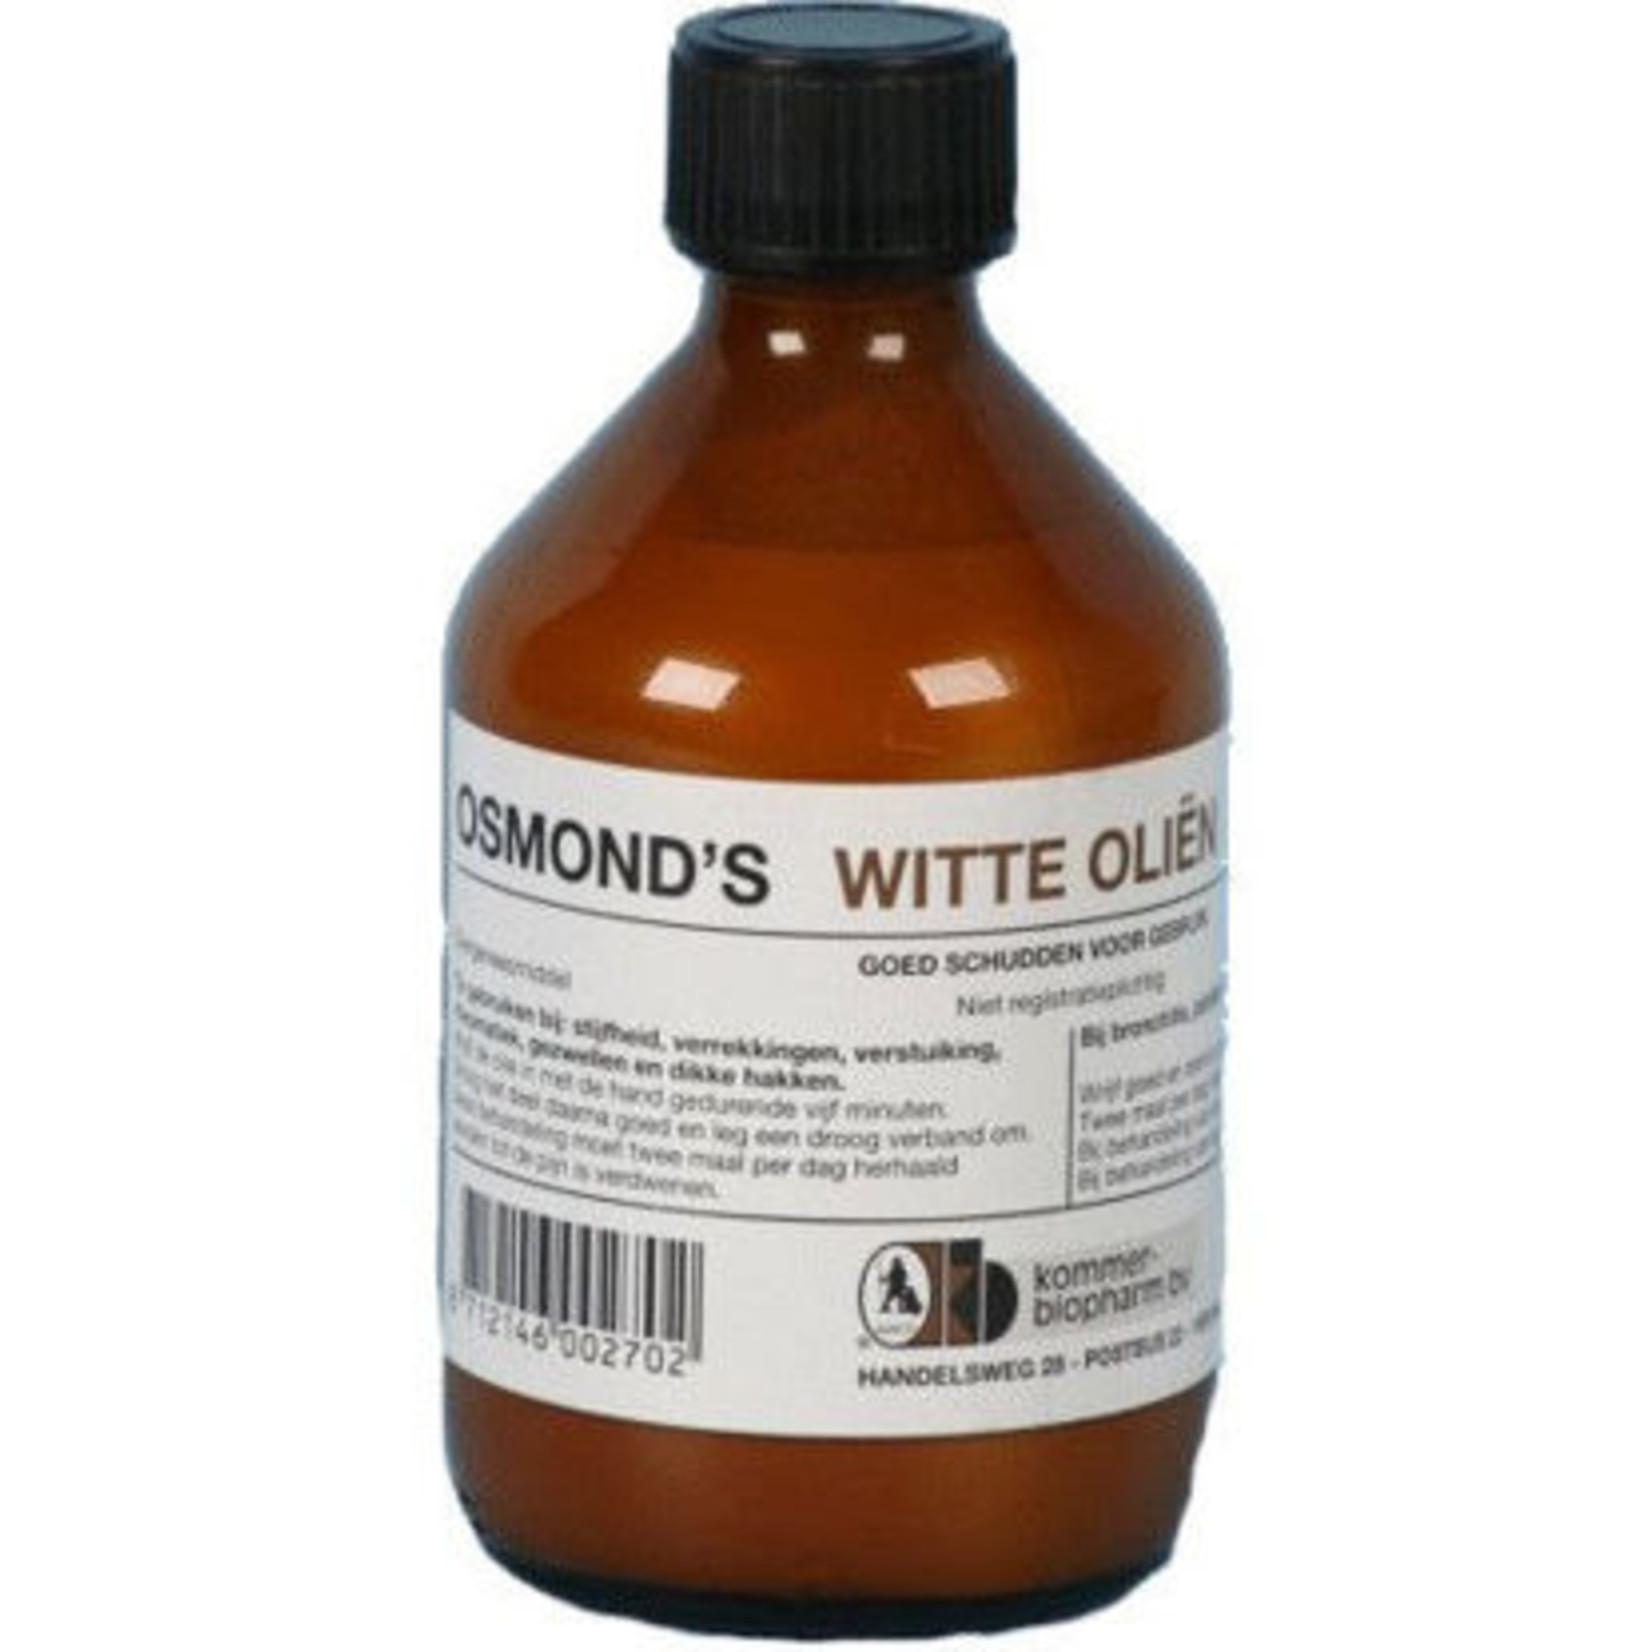 Kommer Osmond's witte olie